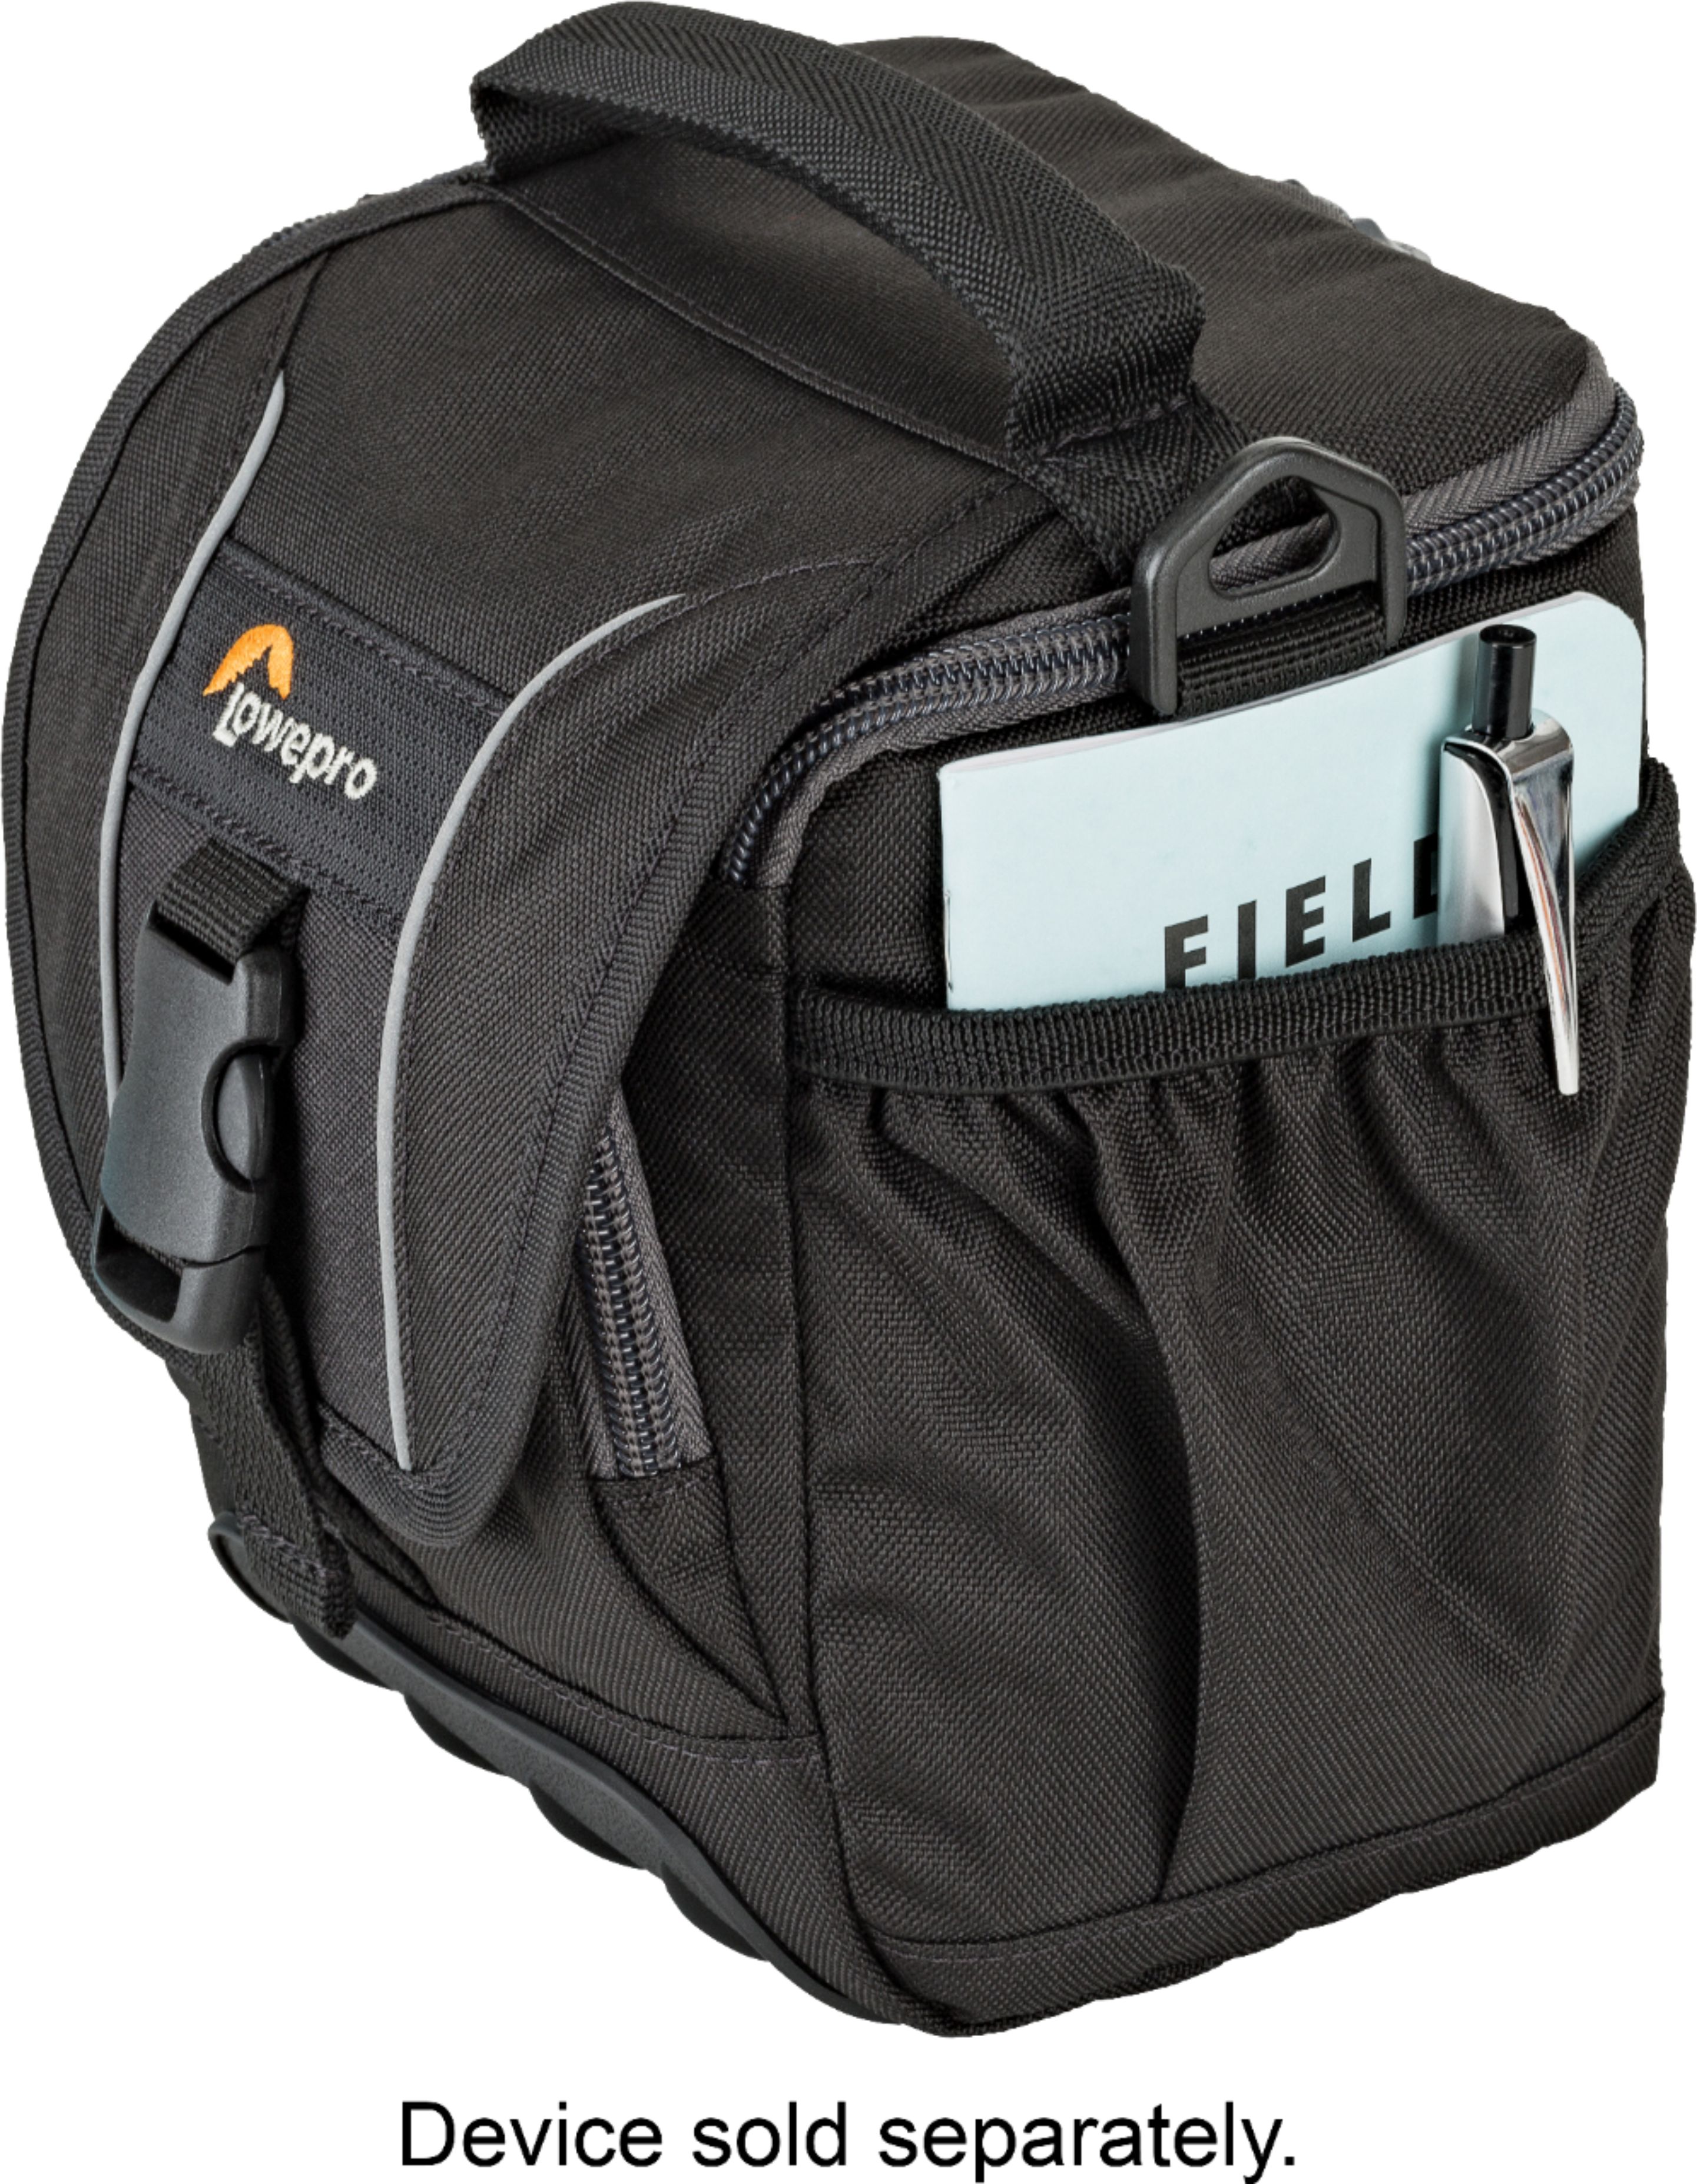 Sherpa Camera Bag – give.